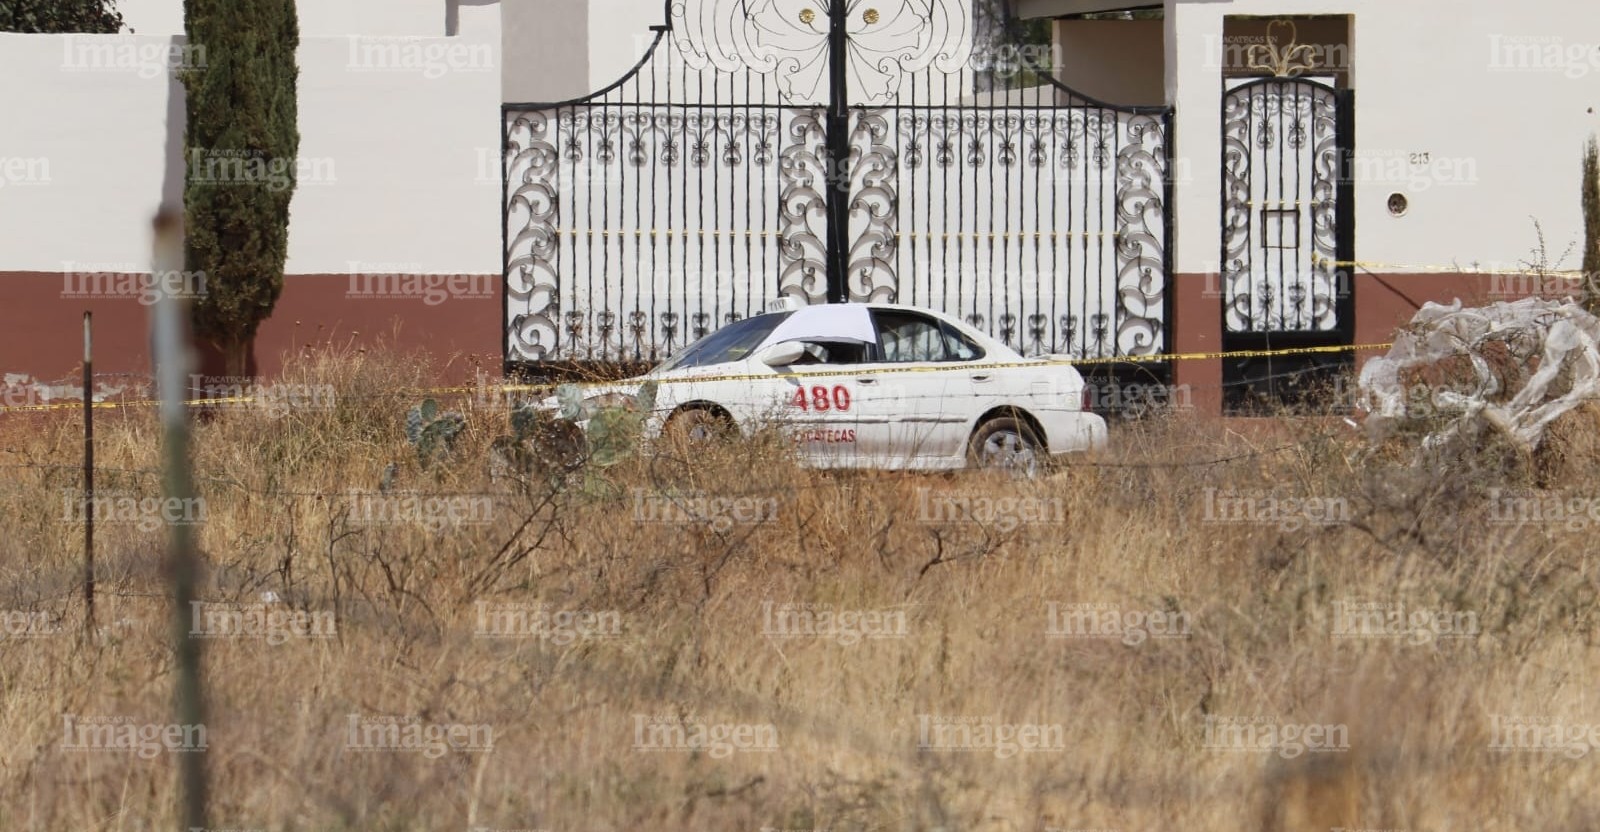 Quien manejaba el carro de sitio número económico 480 con sitio en Zacatecas. | Foto: Imagen.